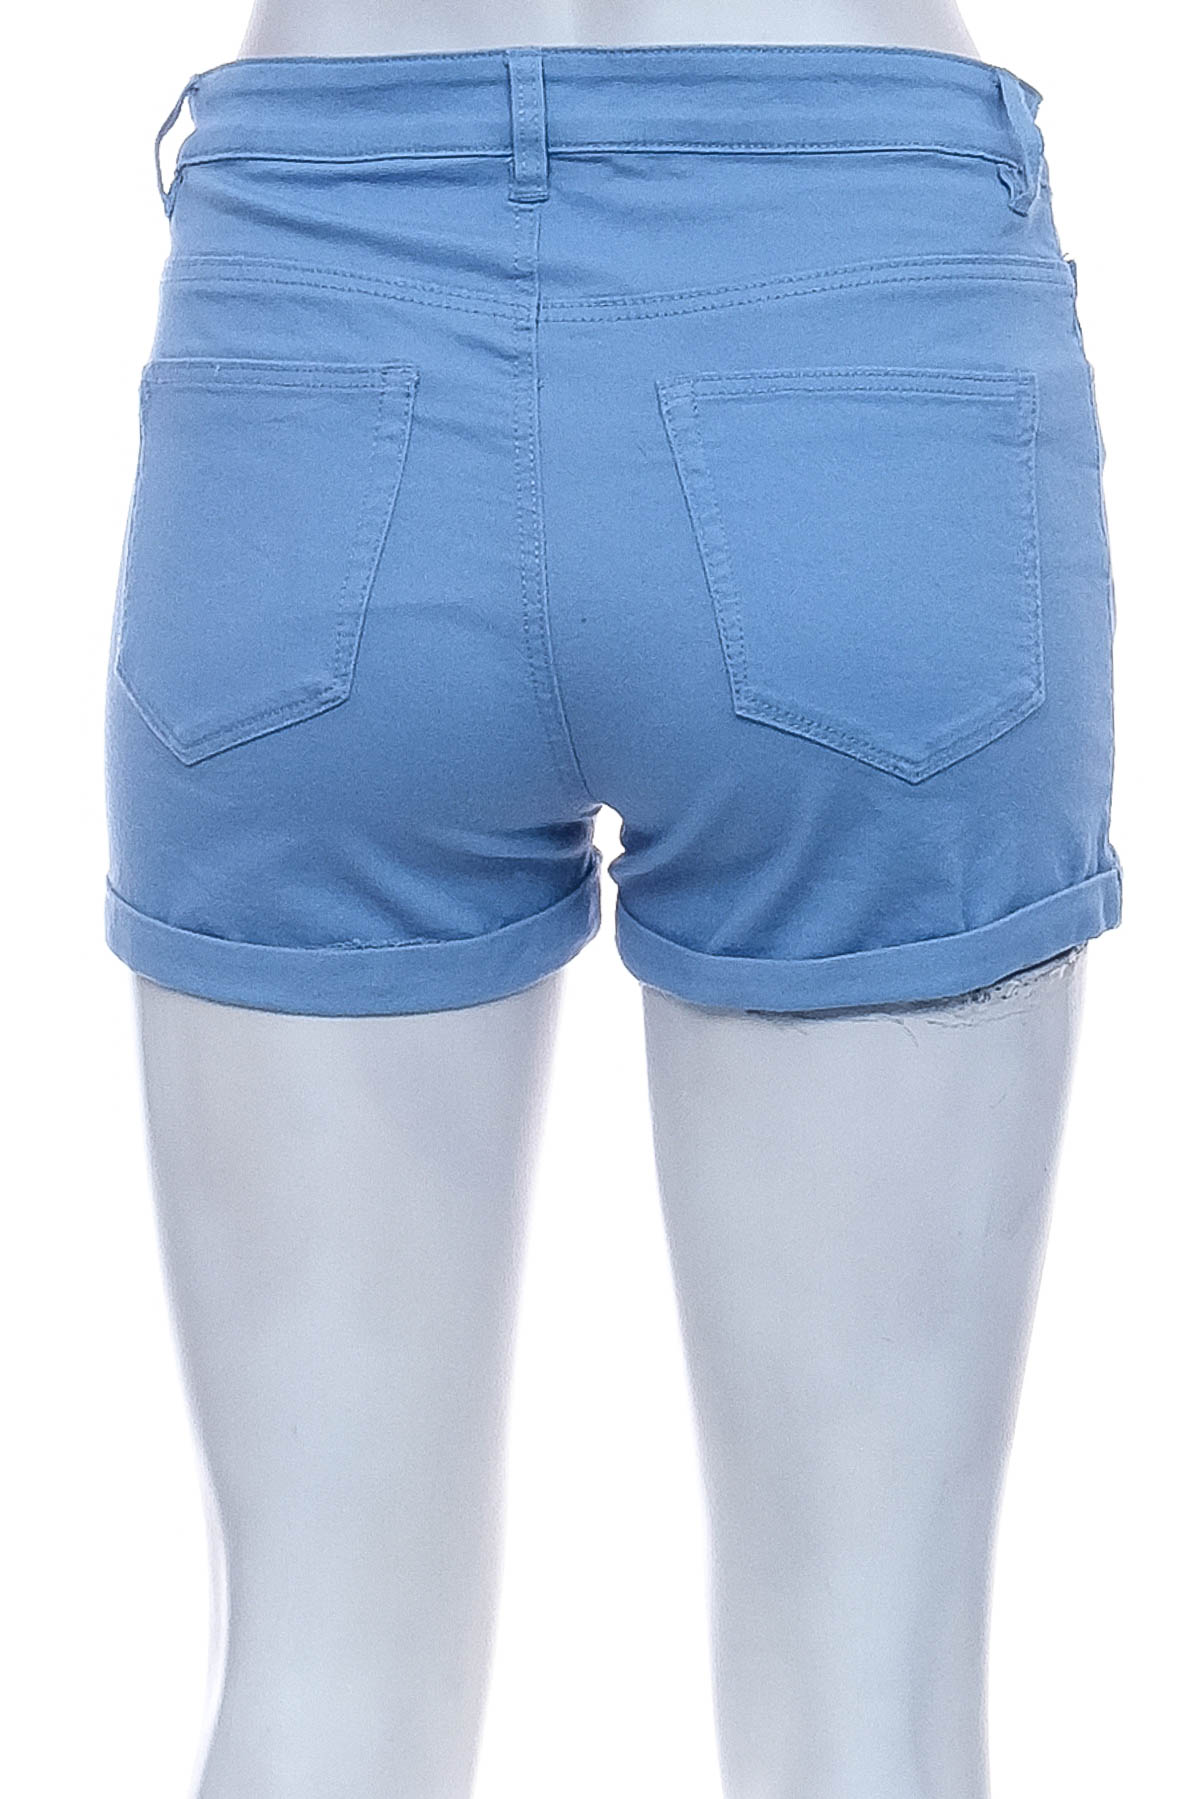 Pantaloni scurți pentru fată - H&M - 1